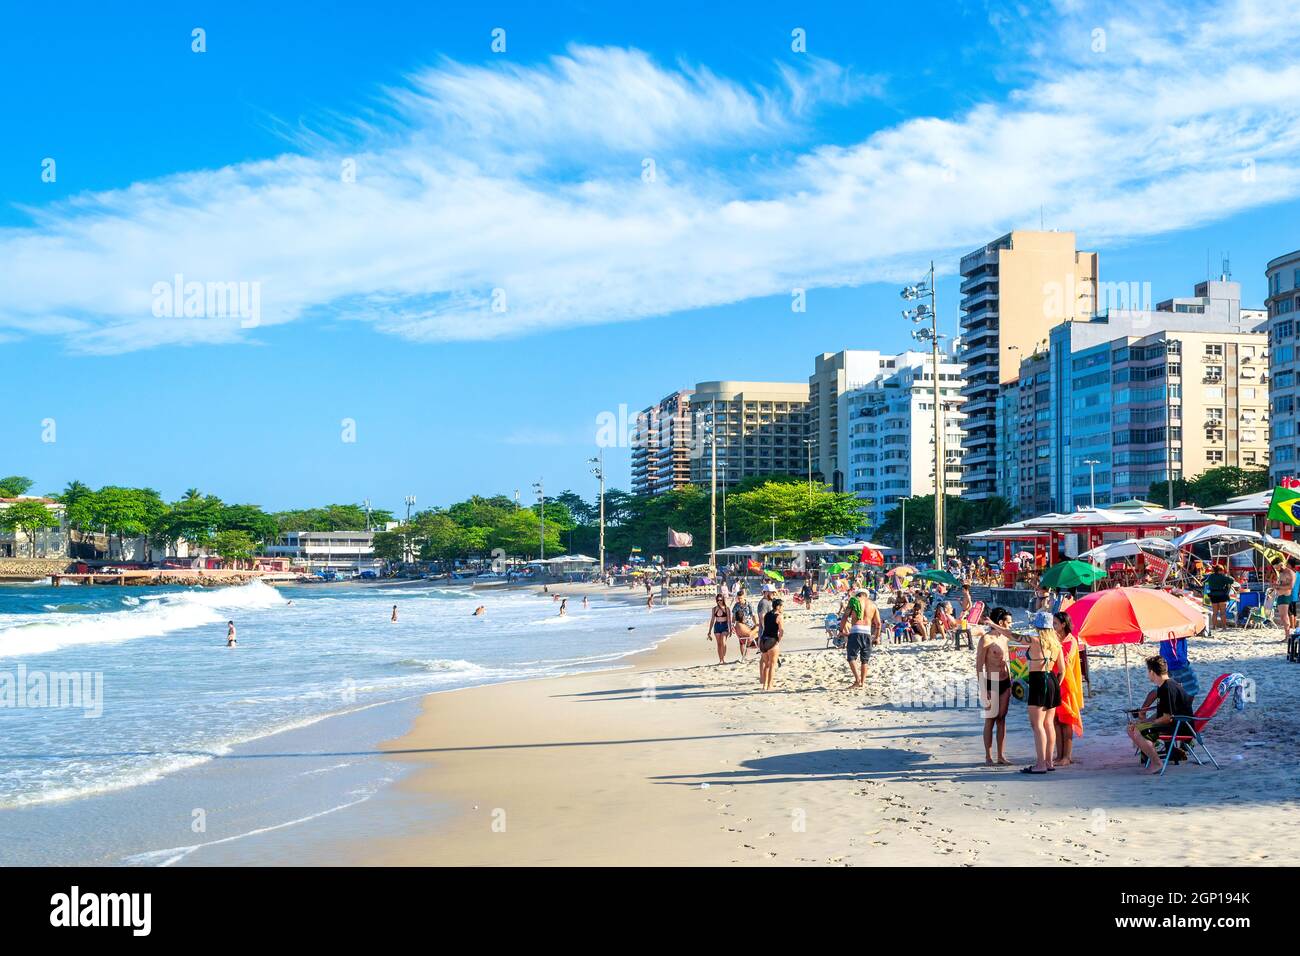 Personnes dans le sable blanc de la plage de Copacabana à Rio de Janeiro, Brésil. Cet endroit est une célèbre attraction touristique dans la ville. Banque D'Images